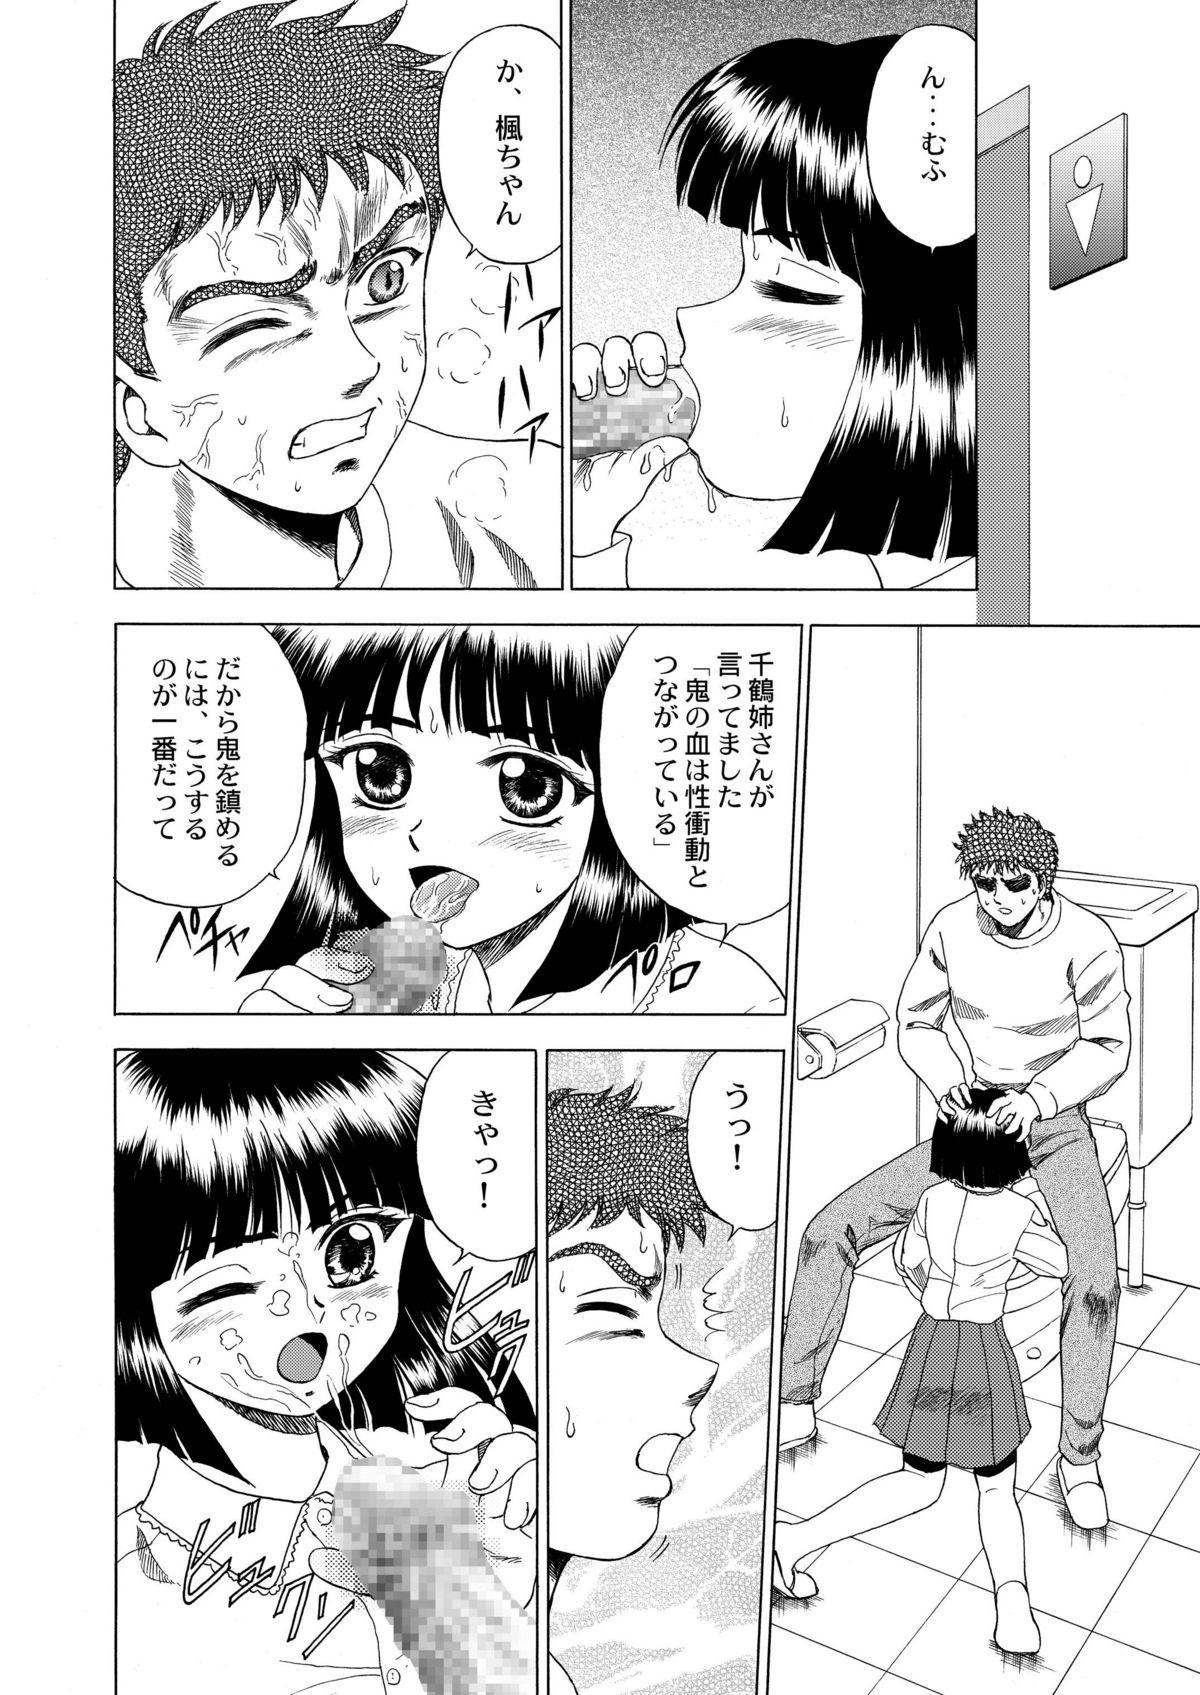 Petite Girl Porn Gekkouki Dai ni Yoru - Tsukihime Kizuato Tetas - Page 11